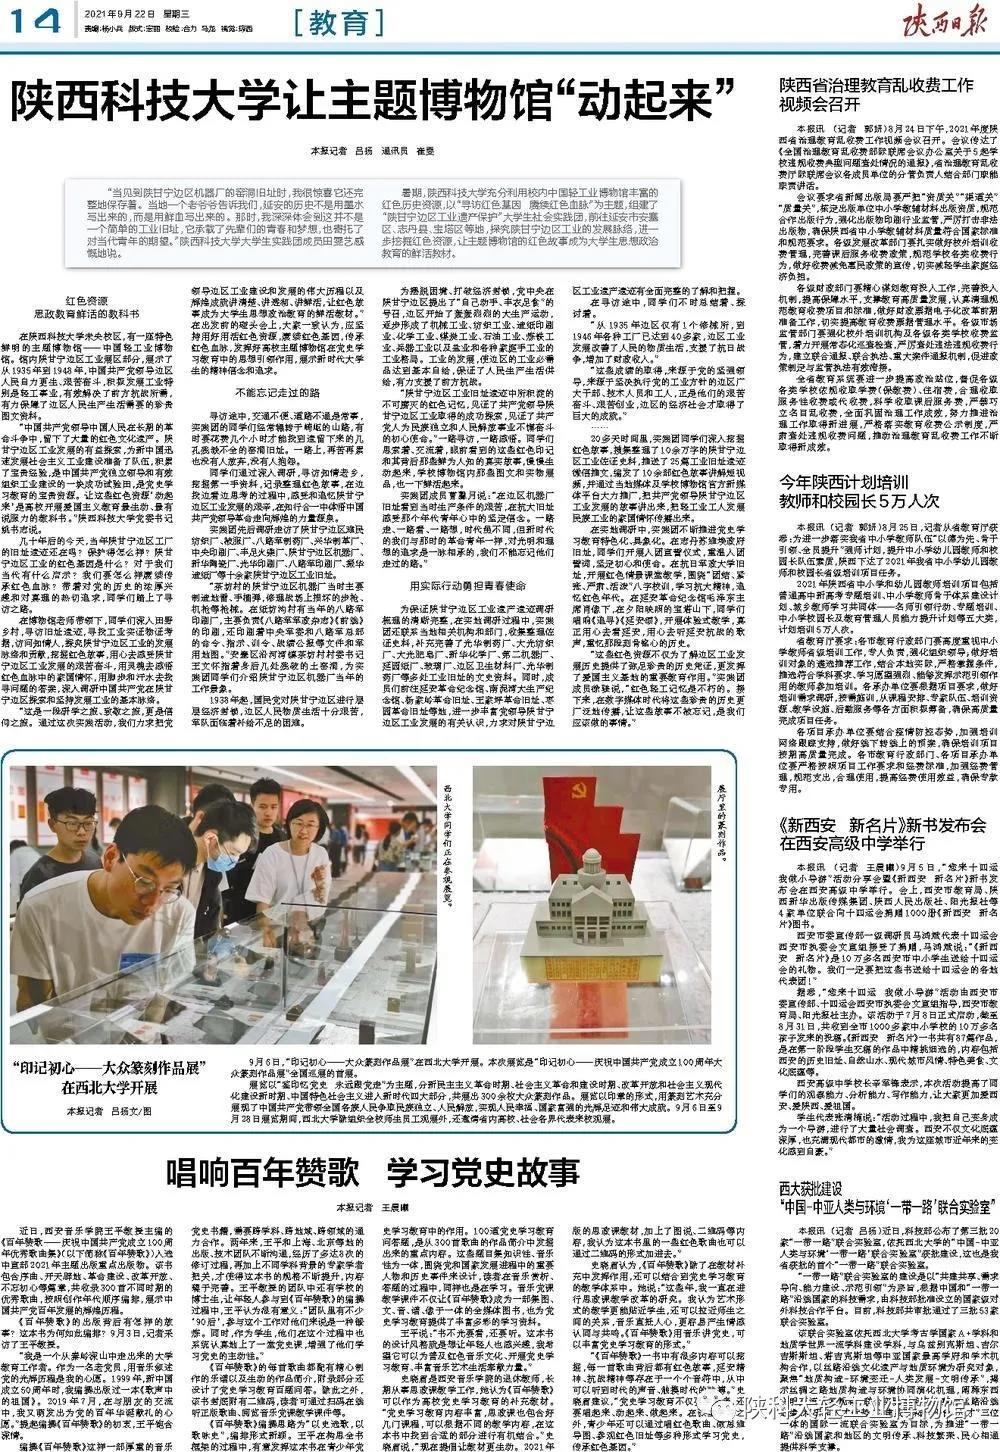 陕西日报|陕西科技大学让主题博物馆“动起来”